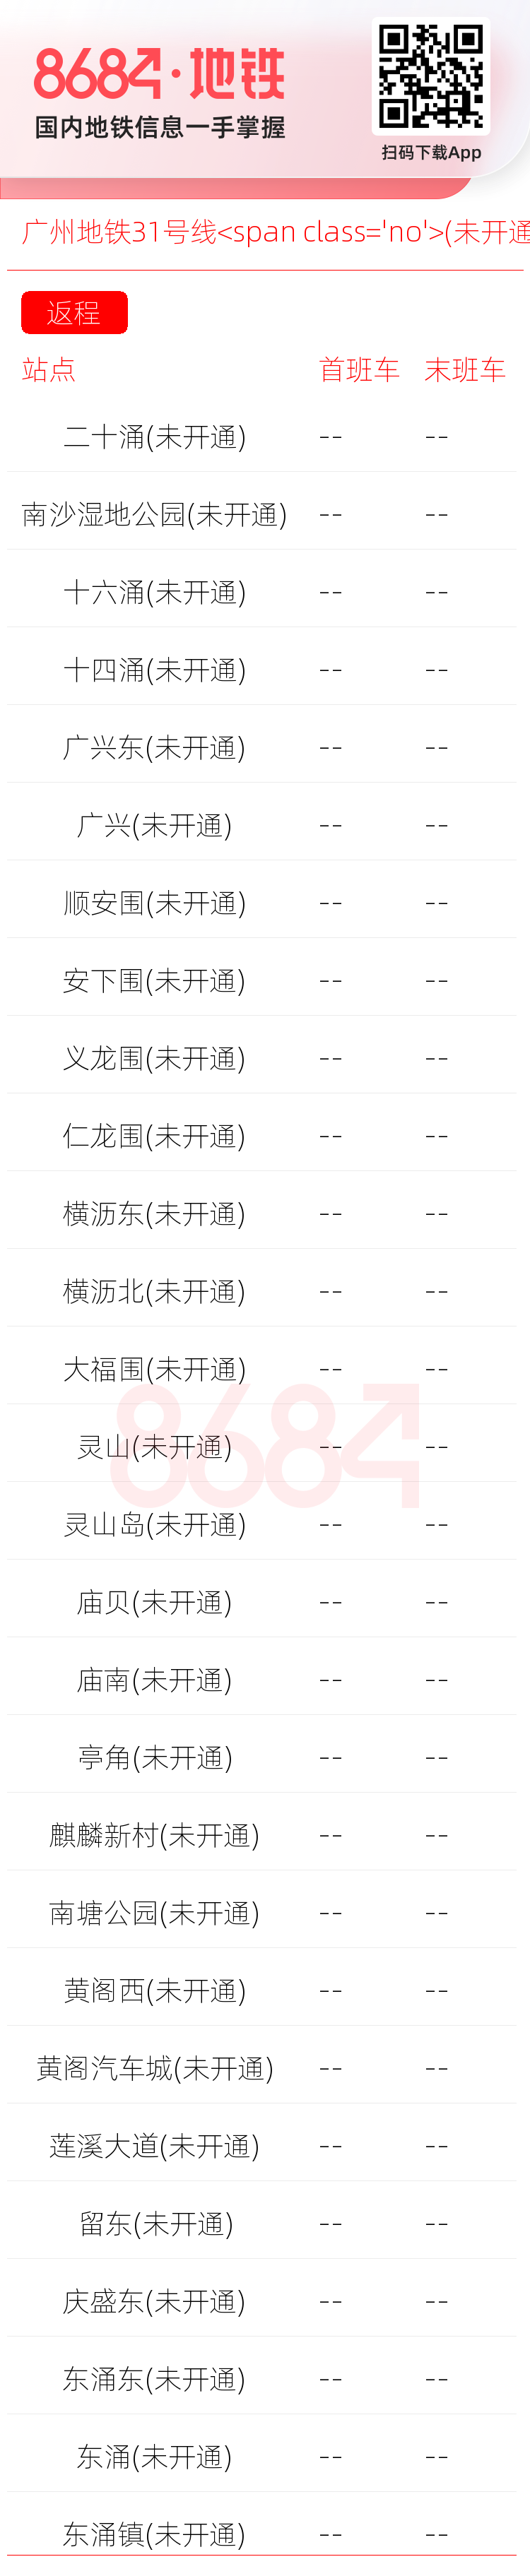 广州地铁31号线<span class='no'>(未开通)</span>运营时间表